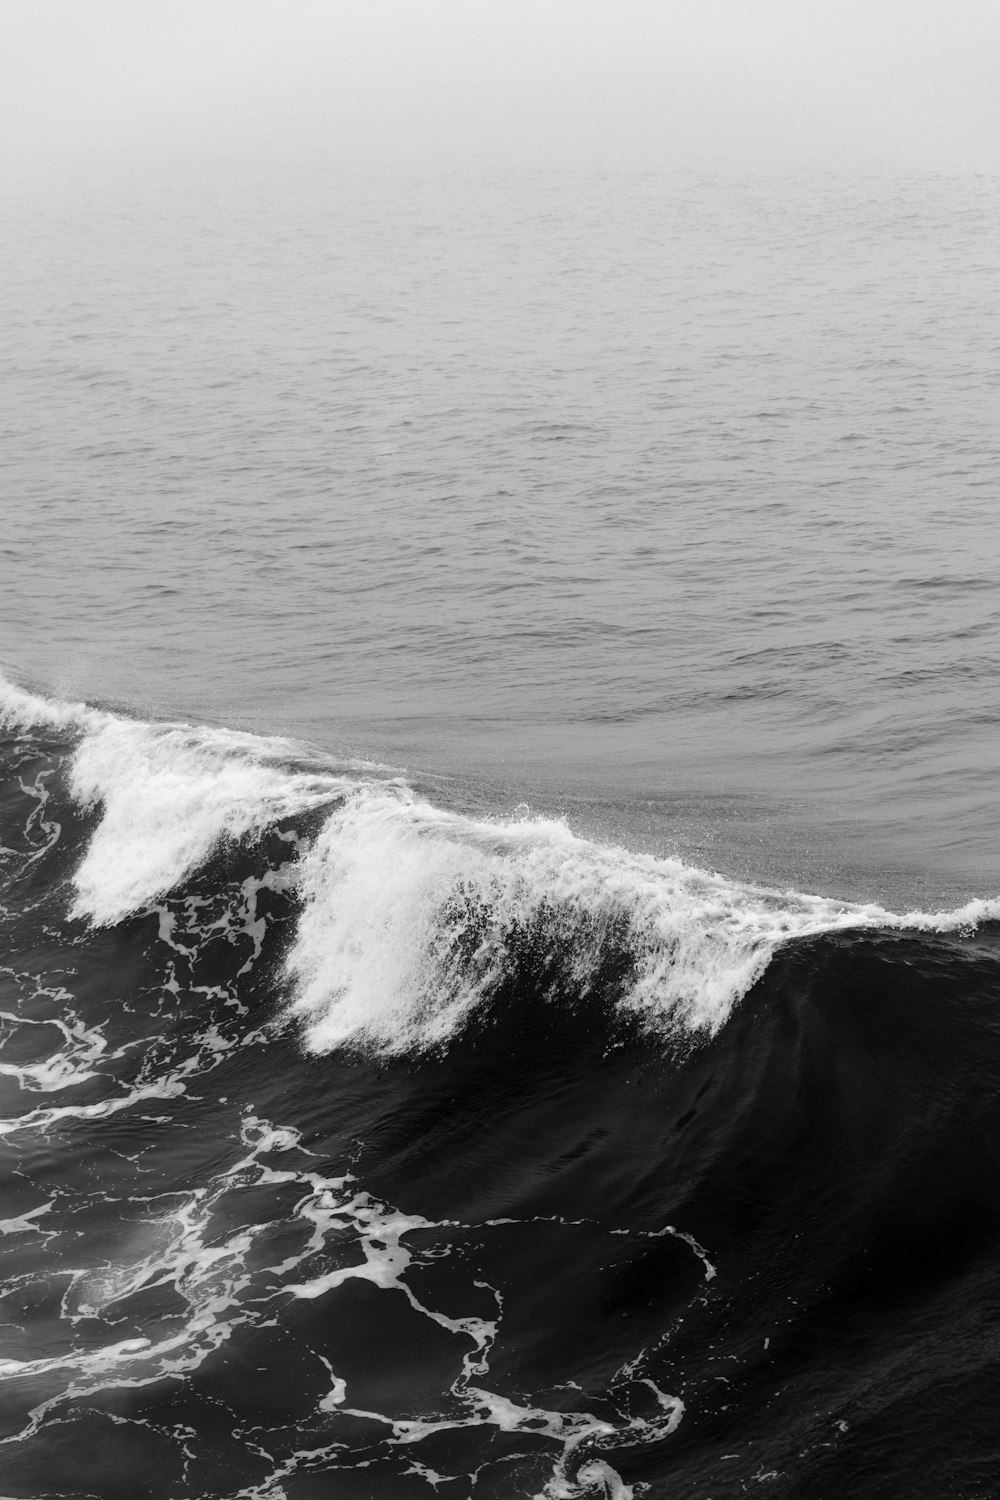 sea waves during daytime